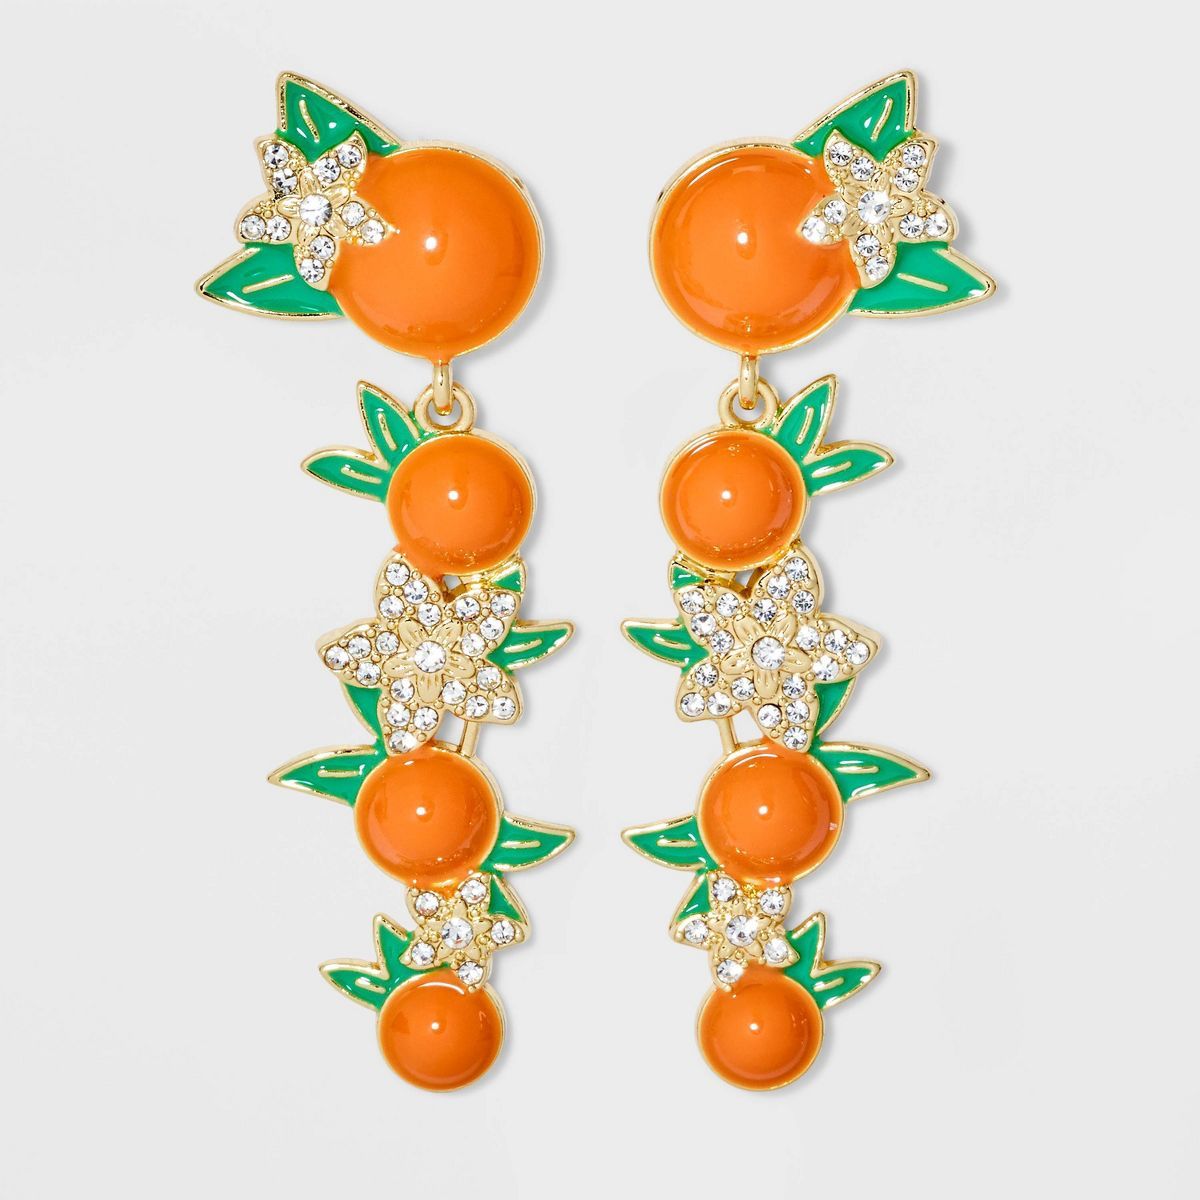 SUGARFIX by BaubleBar Citrust Me Earrings - Orange | Target